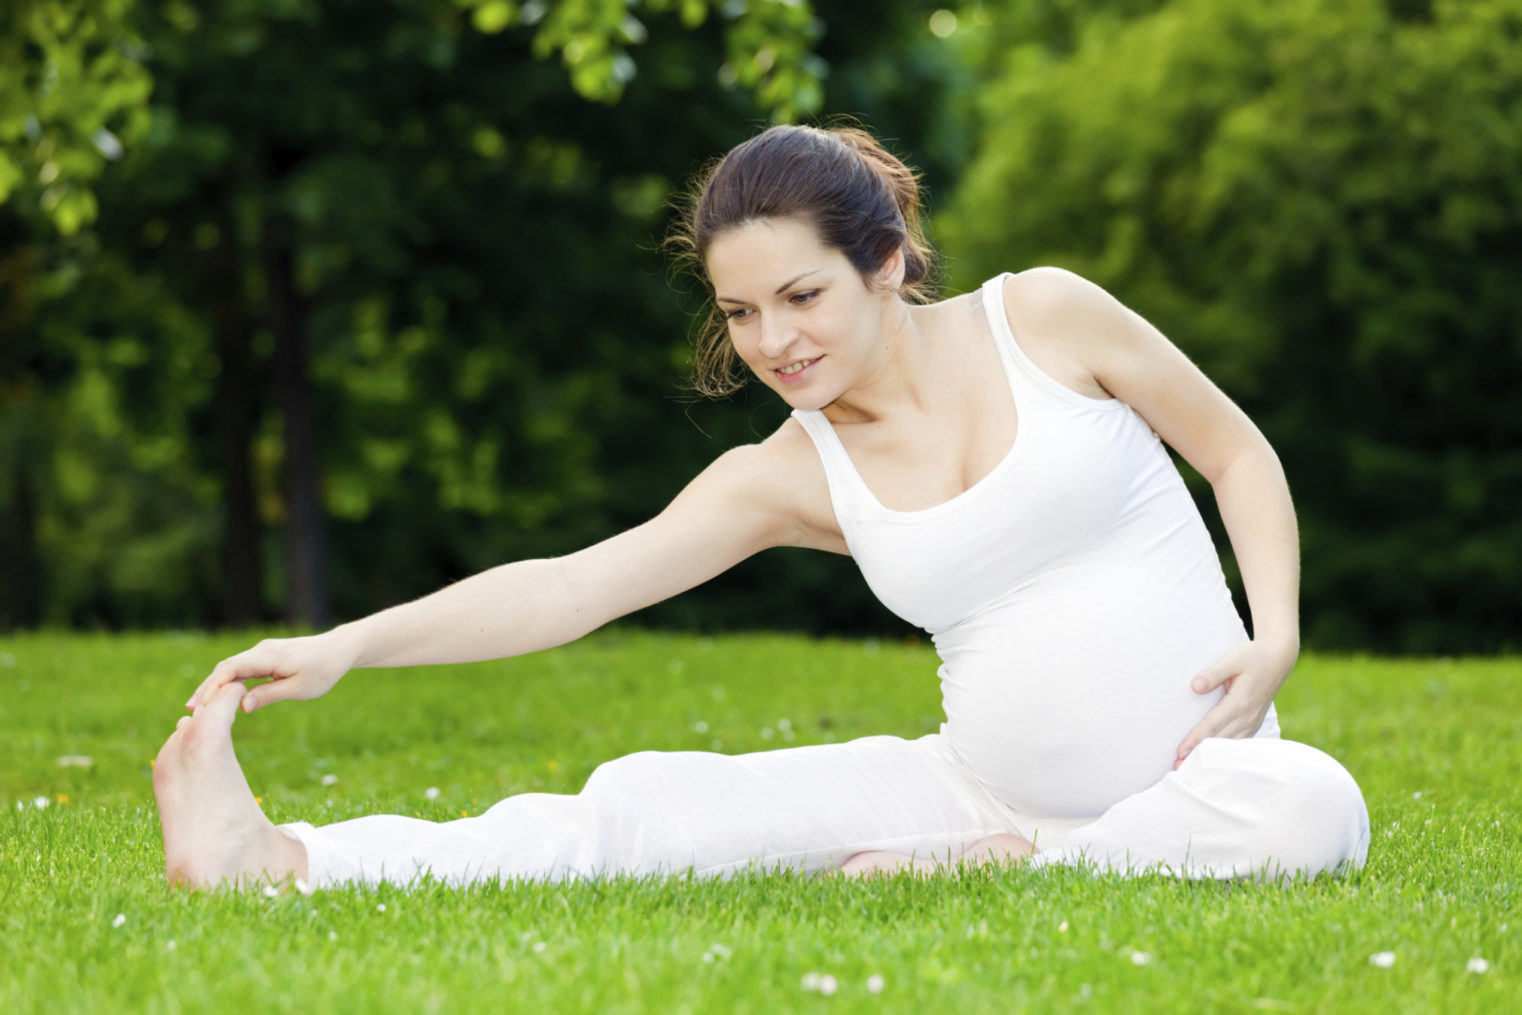 Упражнения при беременности